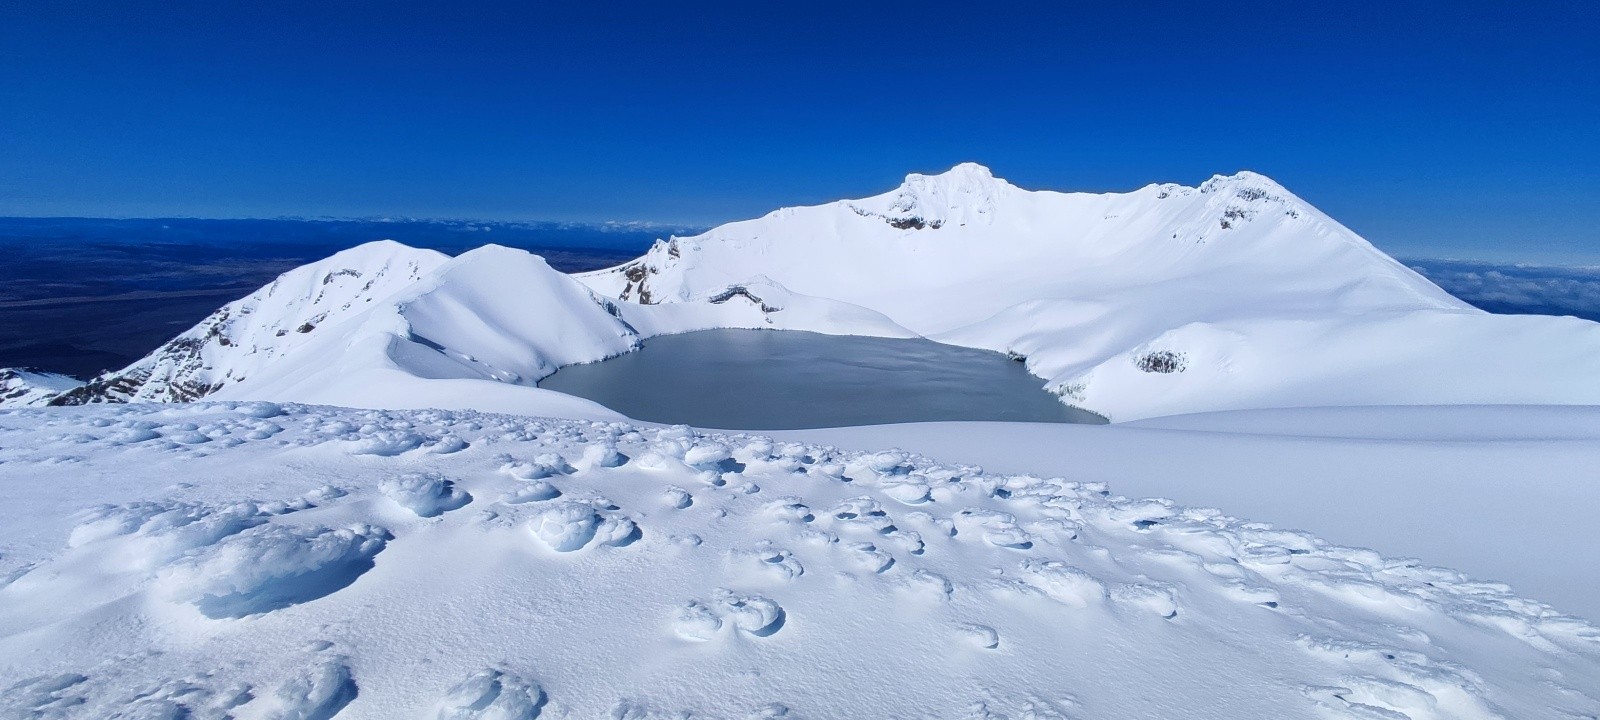  Vu du Dôme, le lac au milieu des sommets du Ruapehu